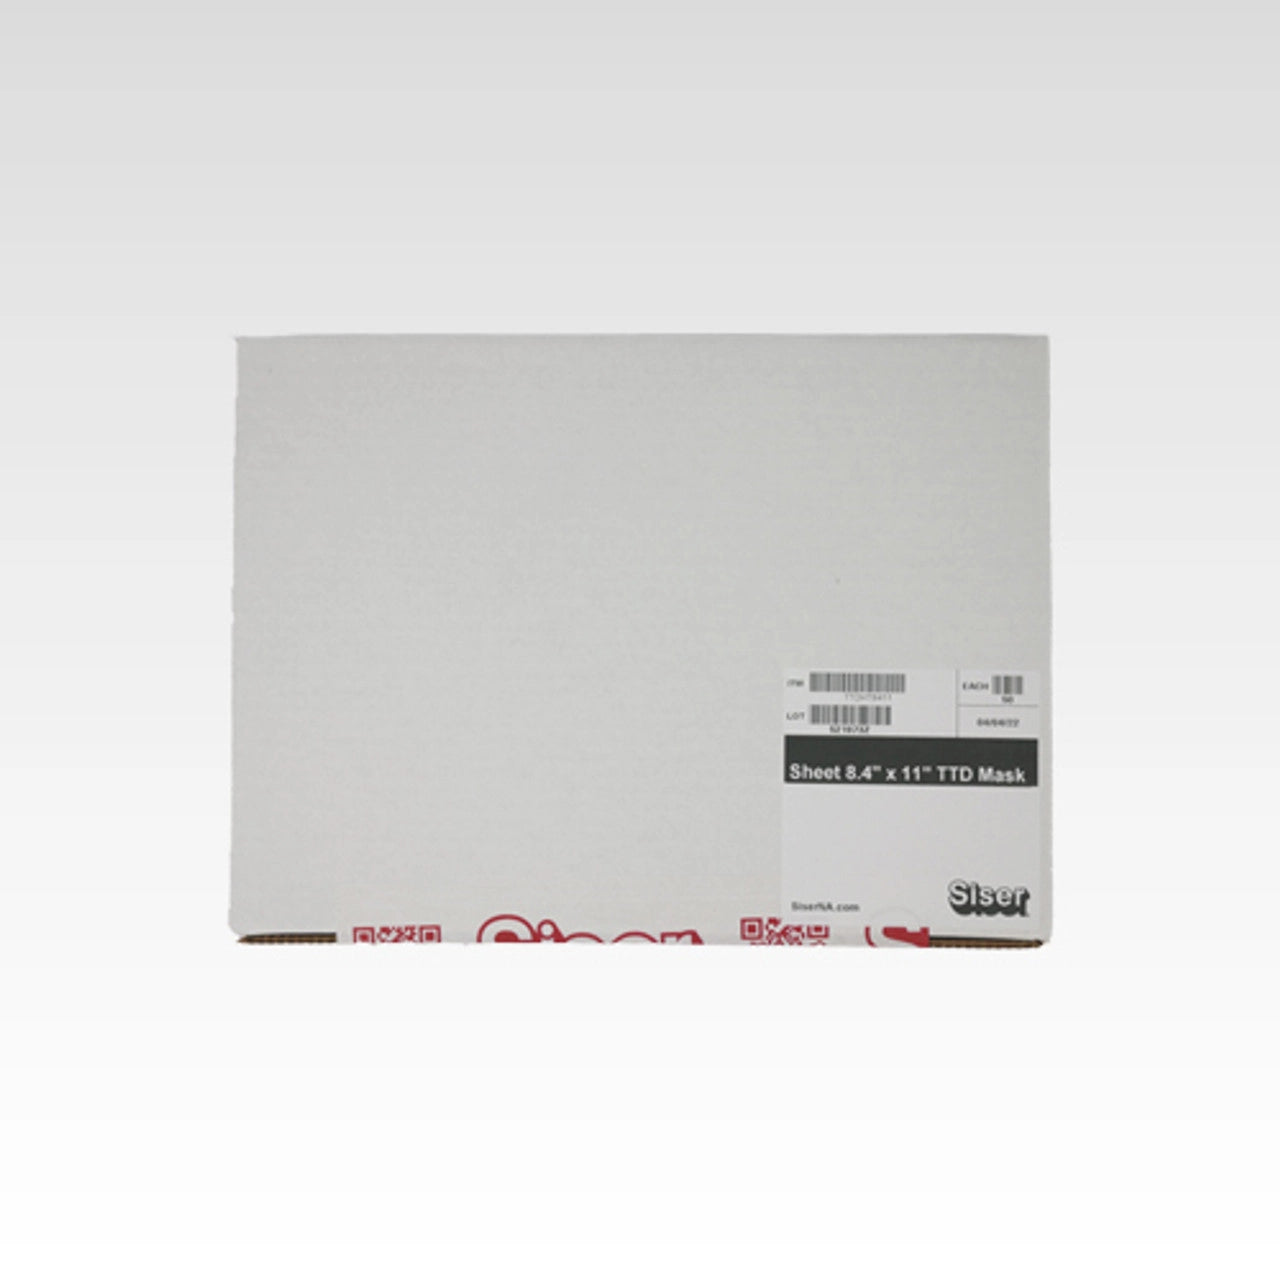 Siser EasySubli Sublimation Heat Transfer Vinyl 8.4 x 11 Sheet